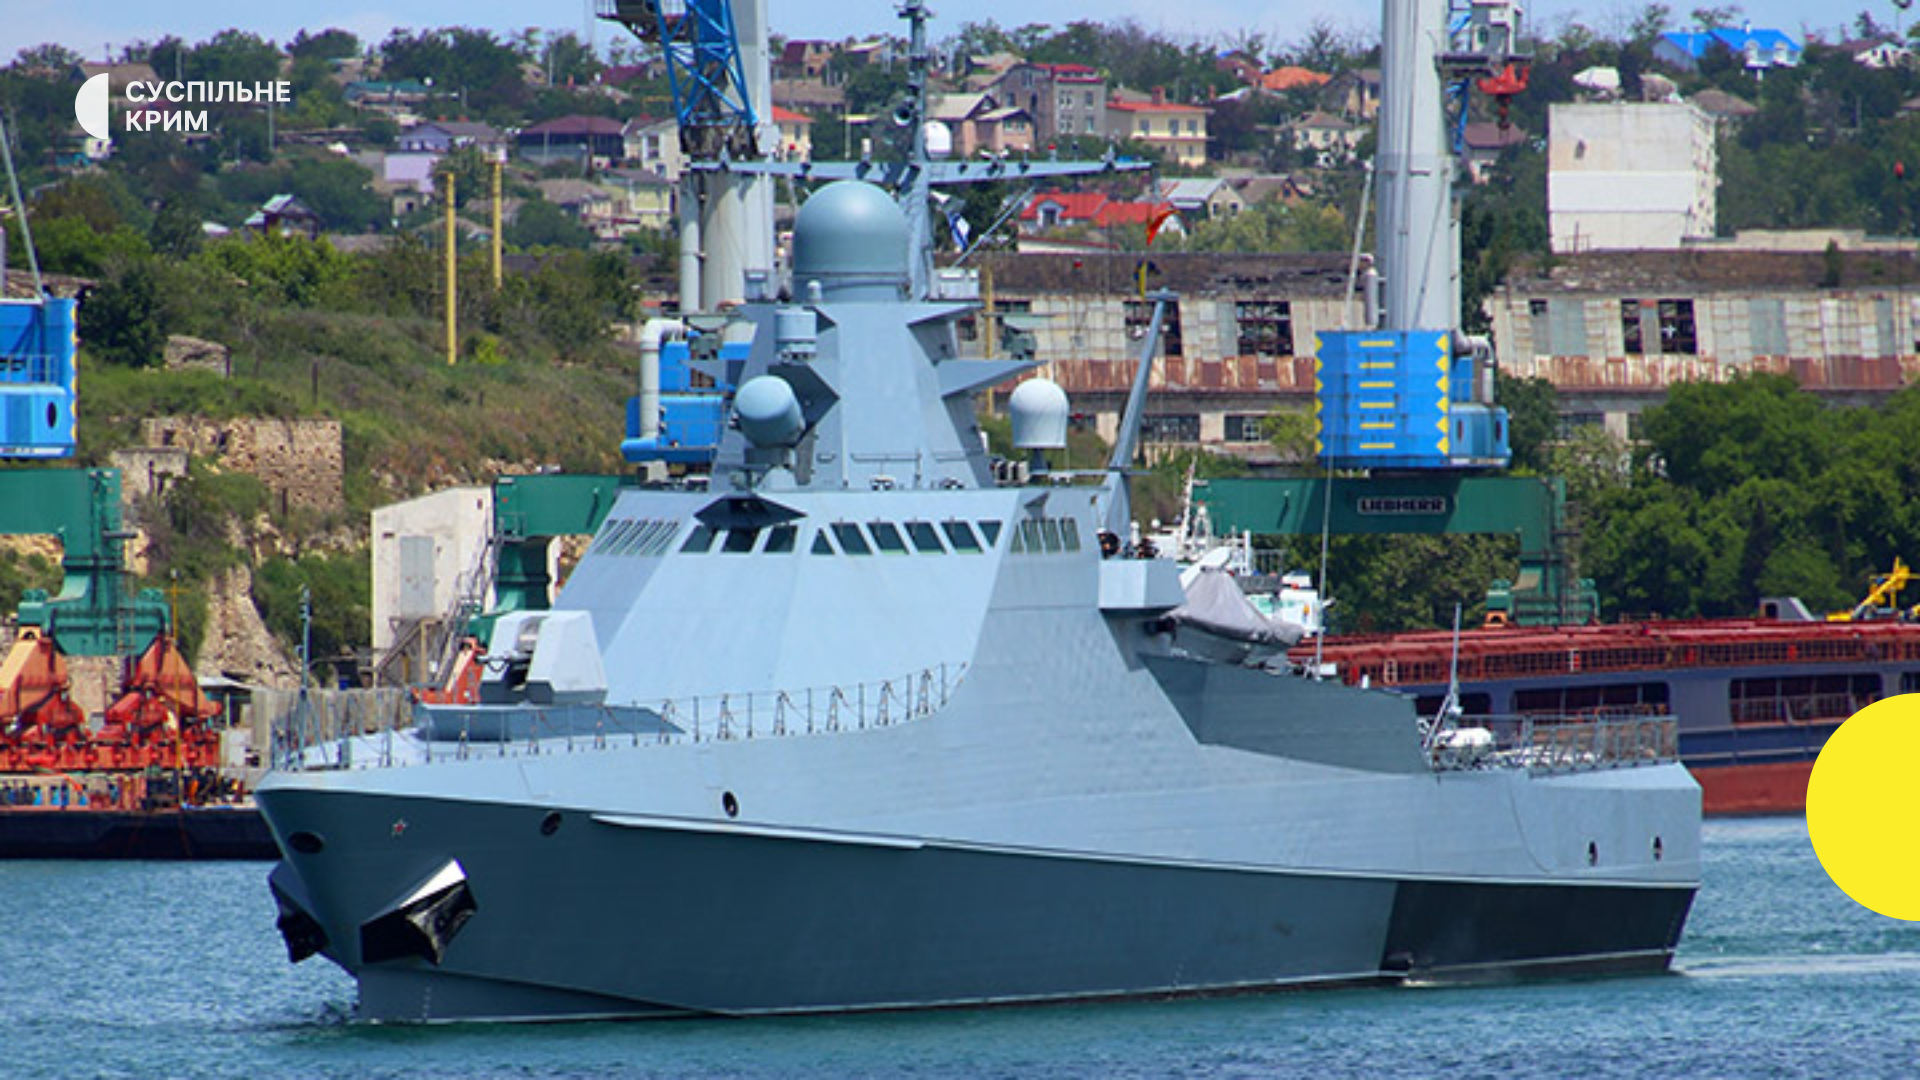 Le navire russe “Serhiy Kotov” a été touché en Crimée occupée